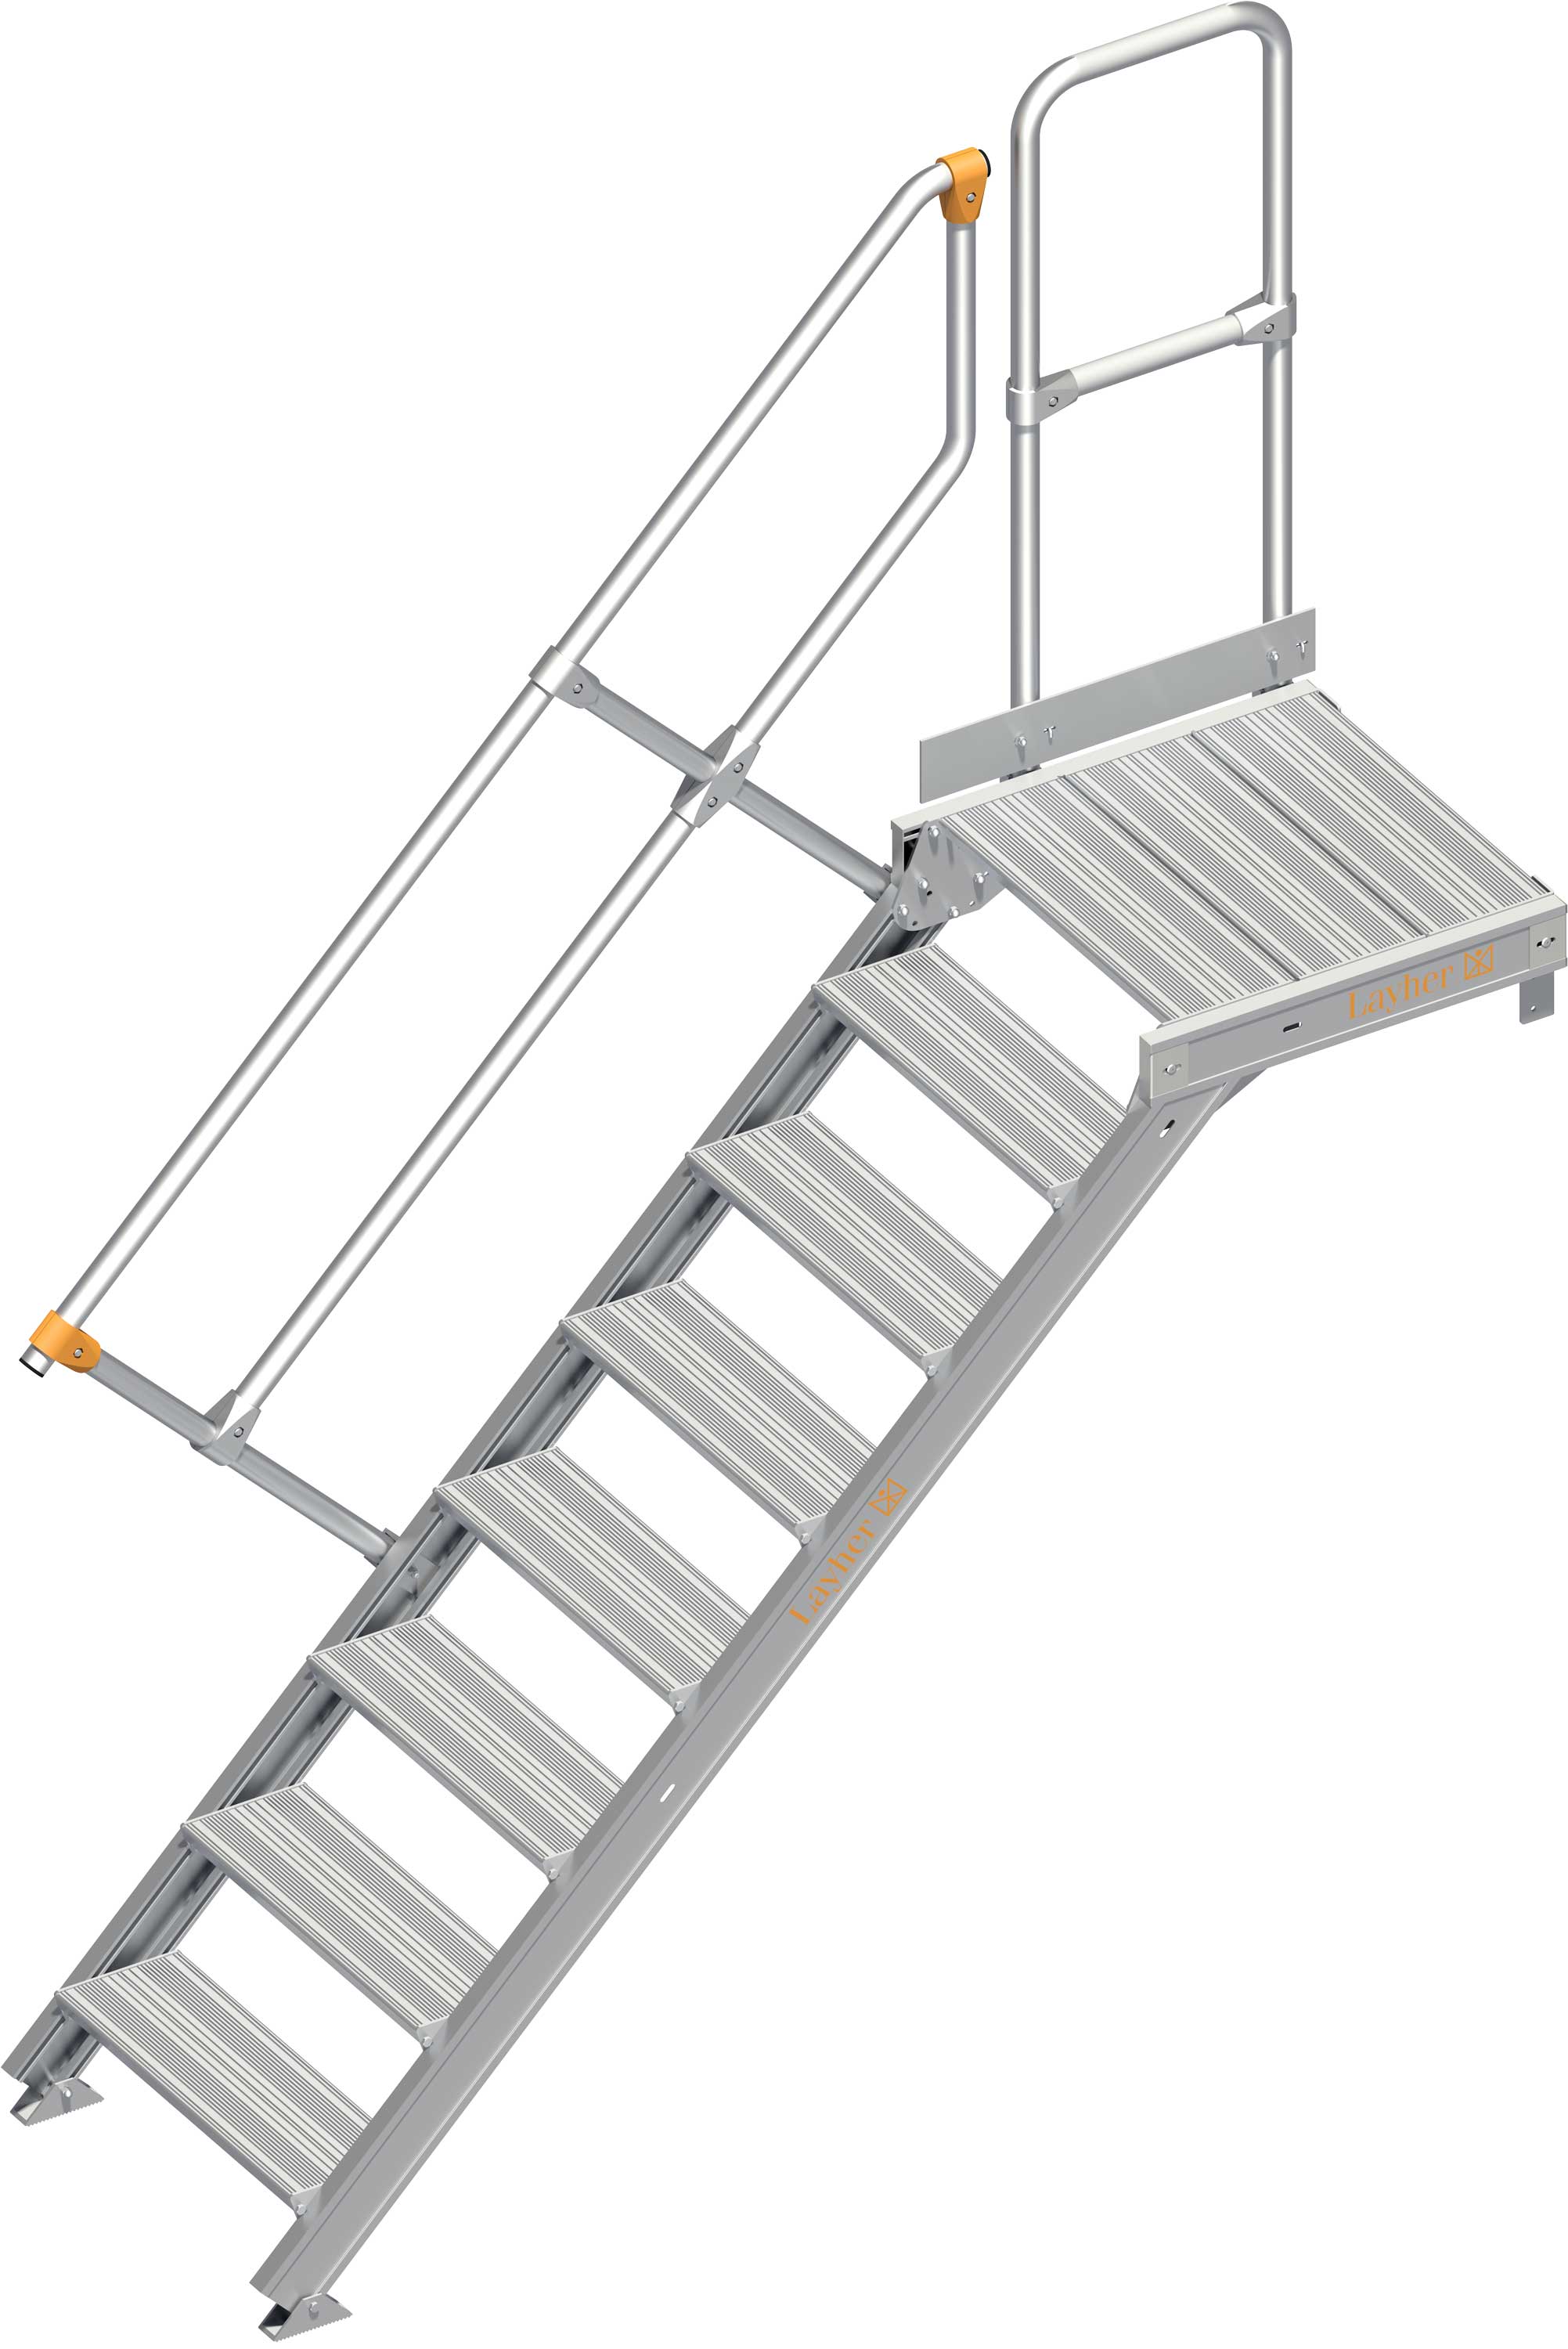 Layher Plattformtreppe 45° SG 8 Stufen - 600 mm breit